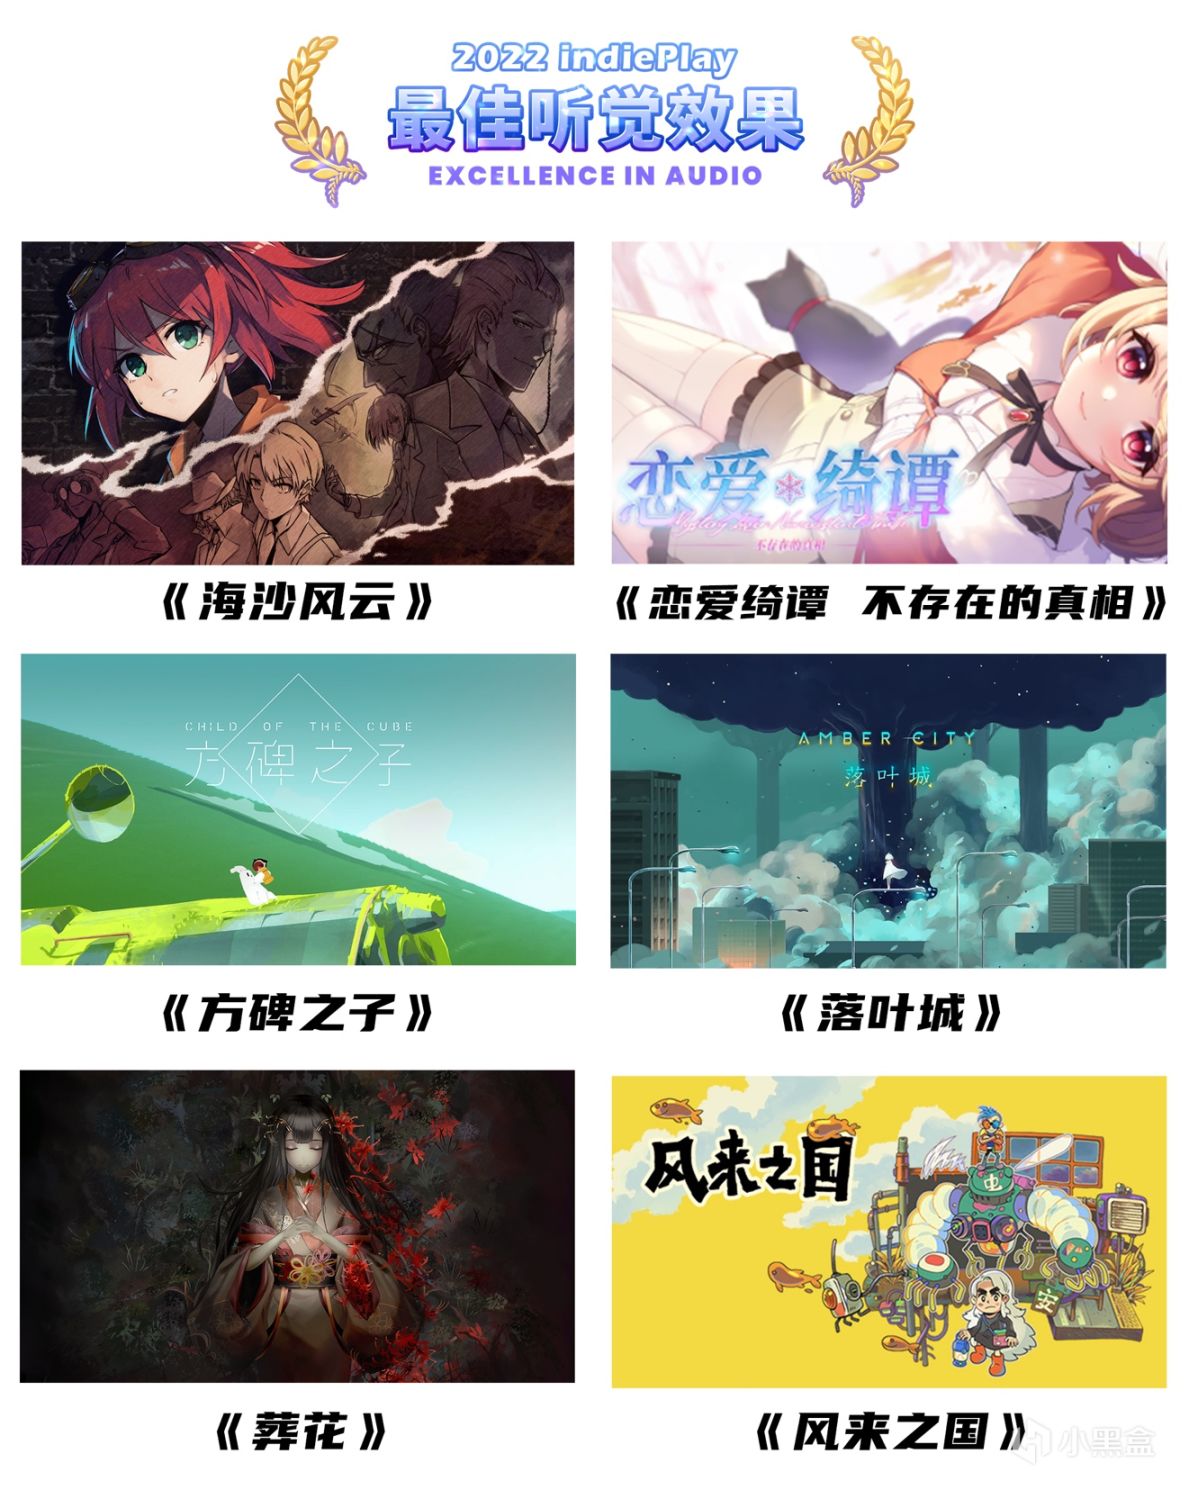 【PC游戏】2022indiePlay中国独立游戏大赛入围名单公布！11月13日公布各奖项最终归属-第10张